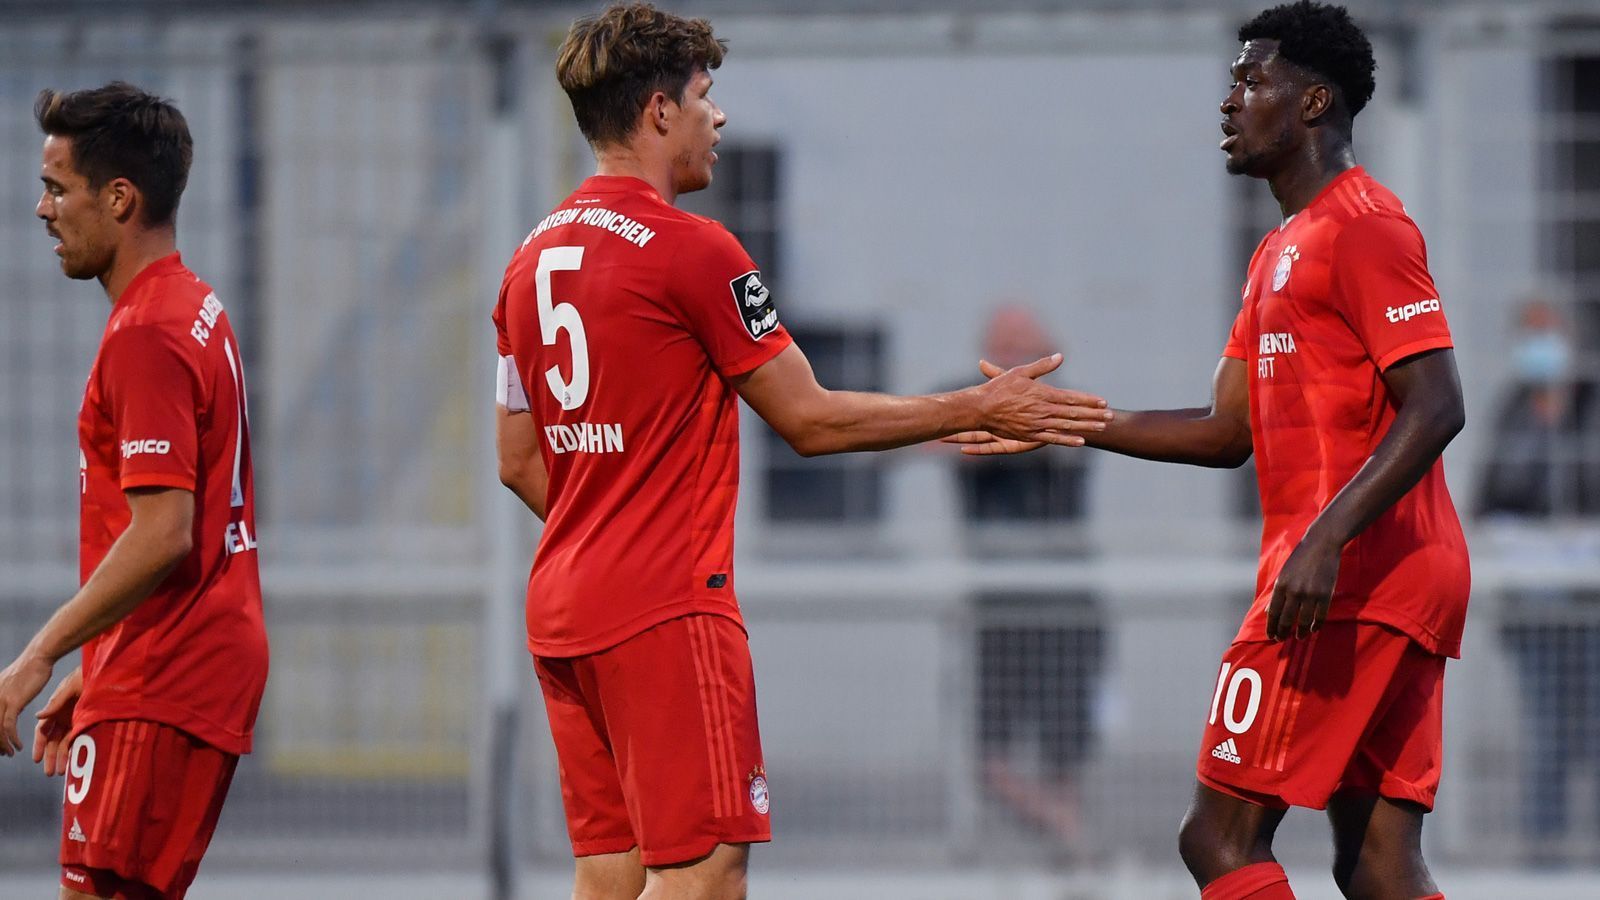 
                <strong>Münchner Derby: FC Bayern II vs. 1860 München</strong><br>
                Na klar, Wriedt hat getroffen. Nach Vorarbeit von Woo-Yeong Jeong schießt der Torjäger aus kurzer Distanz ein.
              